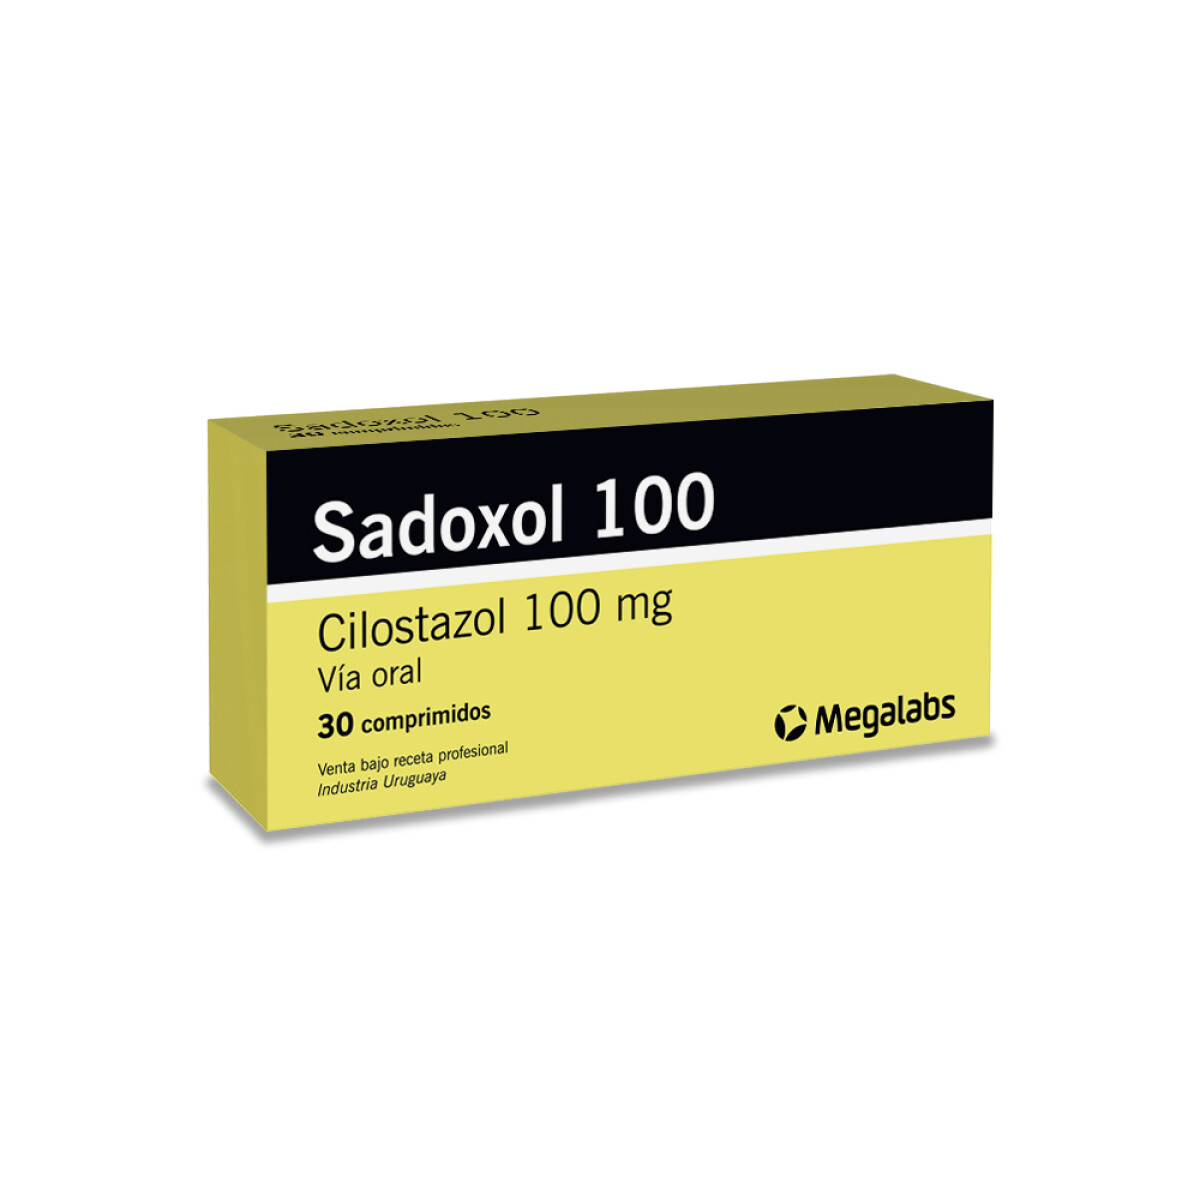 Sadoxol 100 